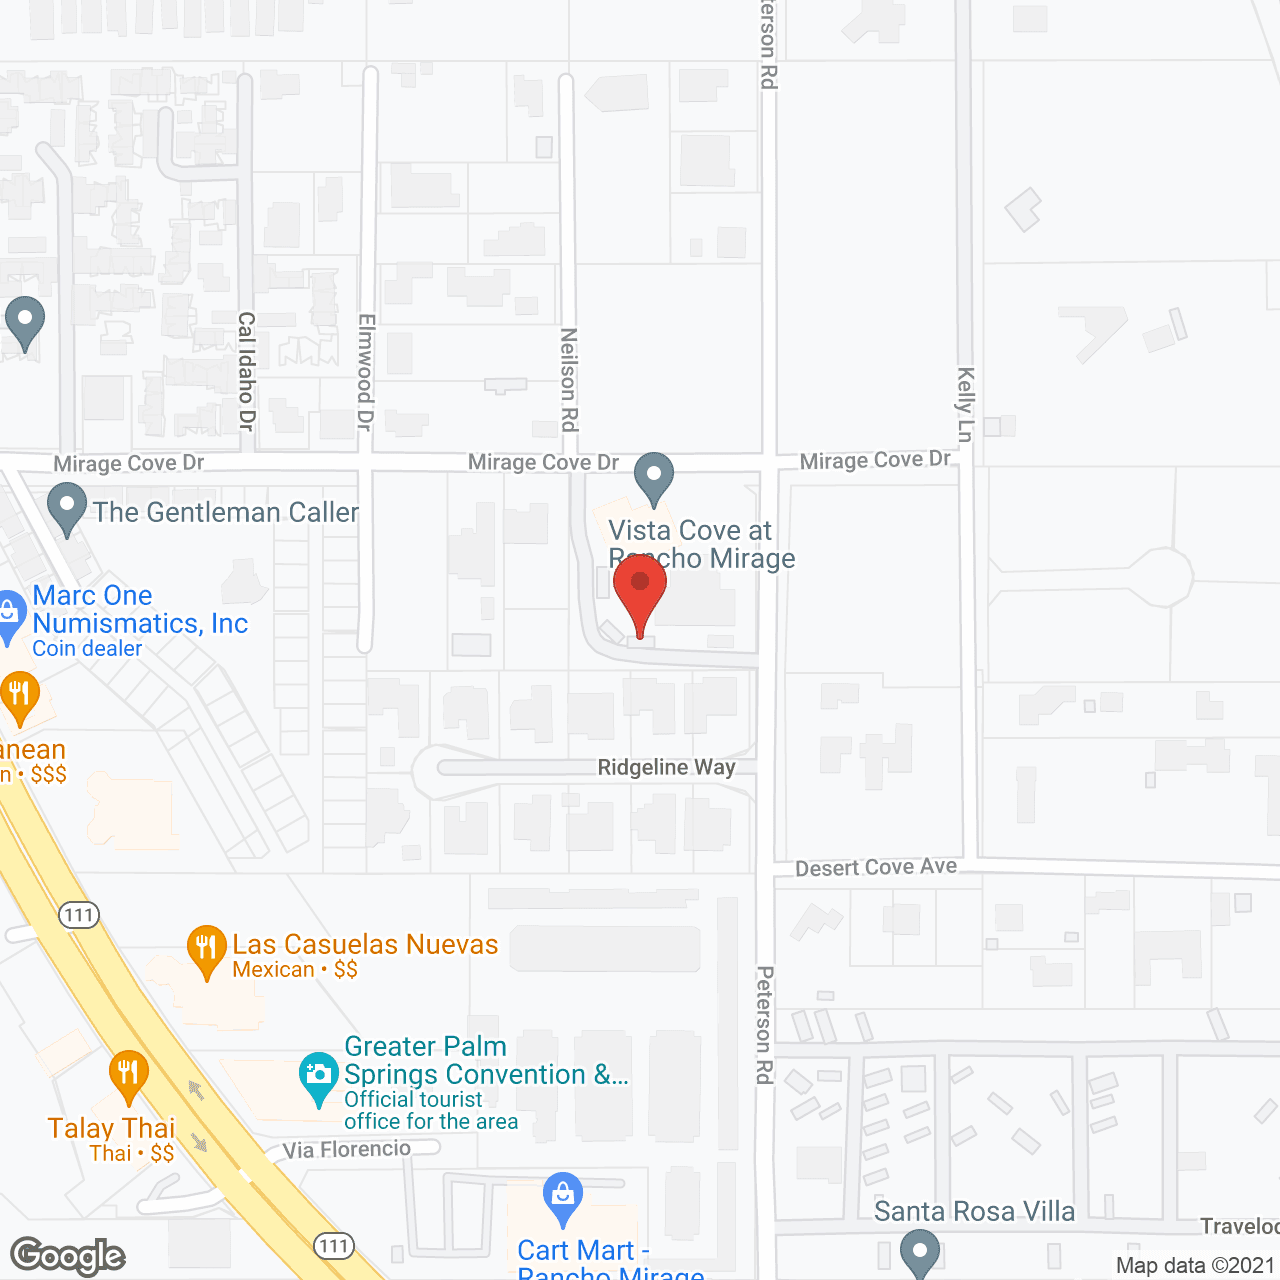 Vista Cove at Rancho Mirage in google map